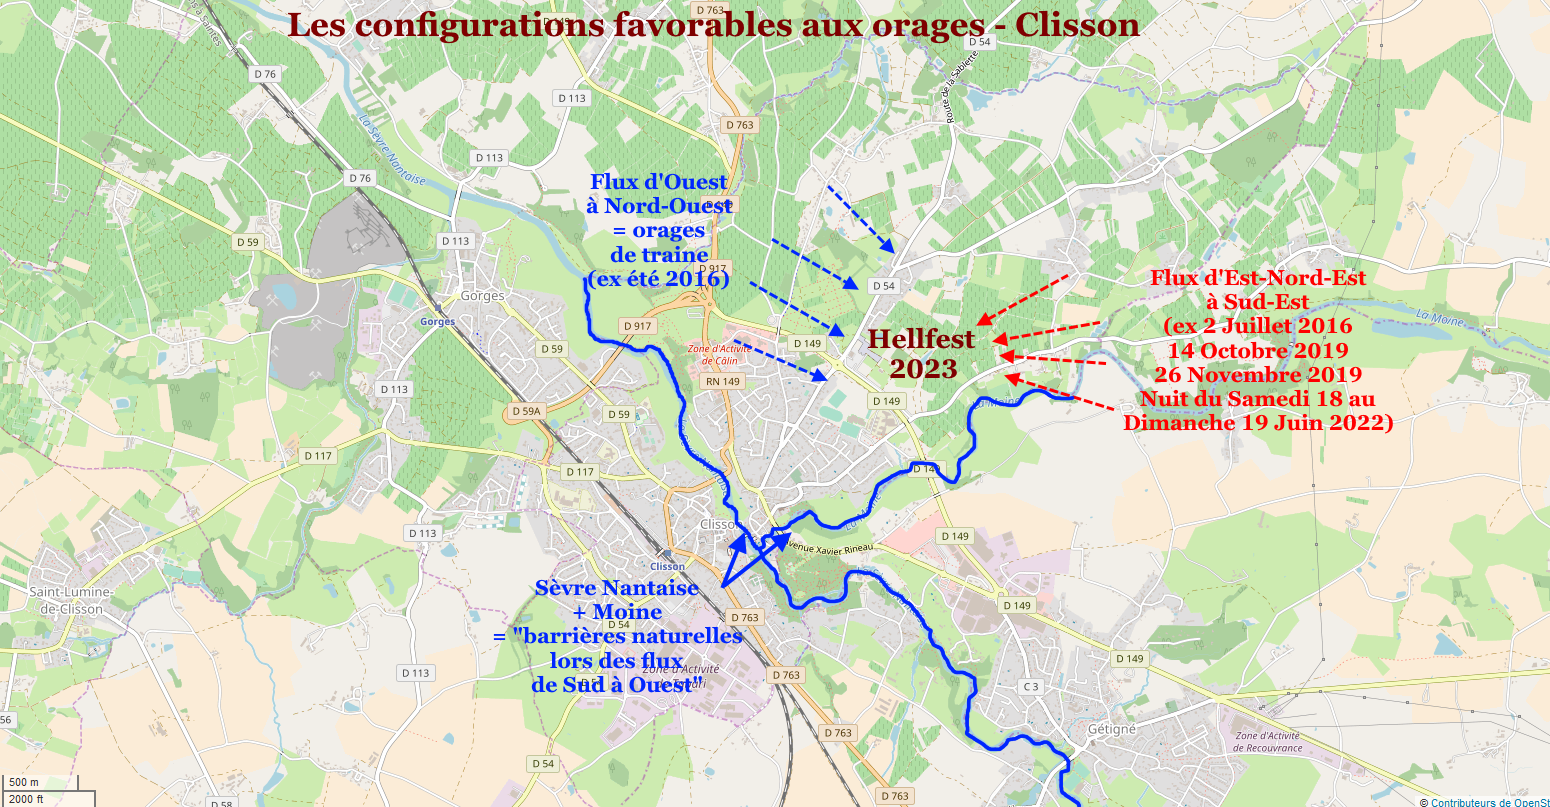 Probabilités orages configuration Clisson 2023